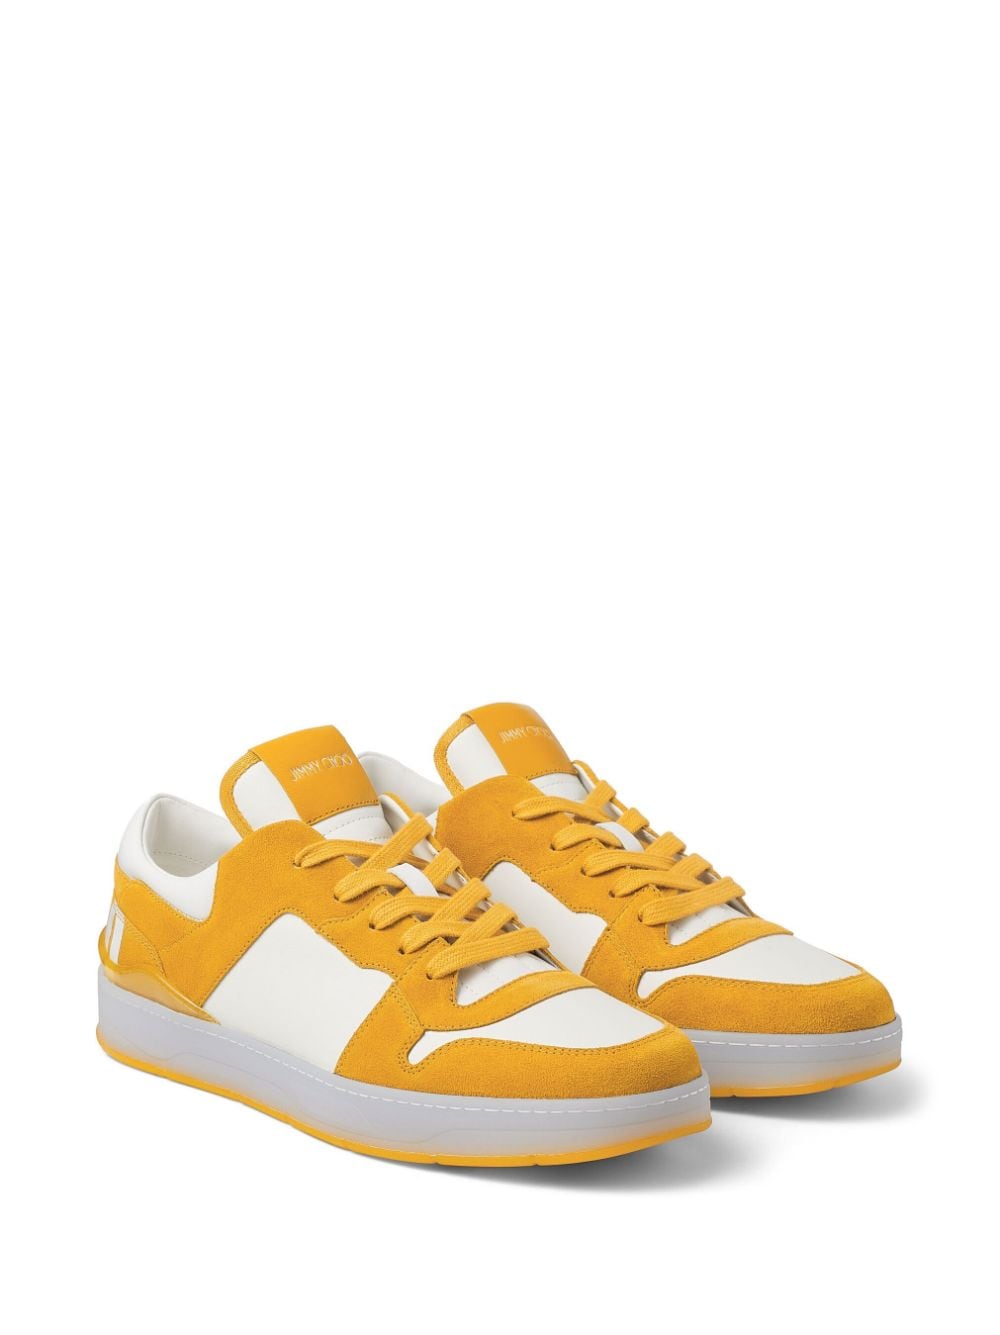 Louis Vuitton Archlight Yellow & White Sneakers